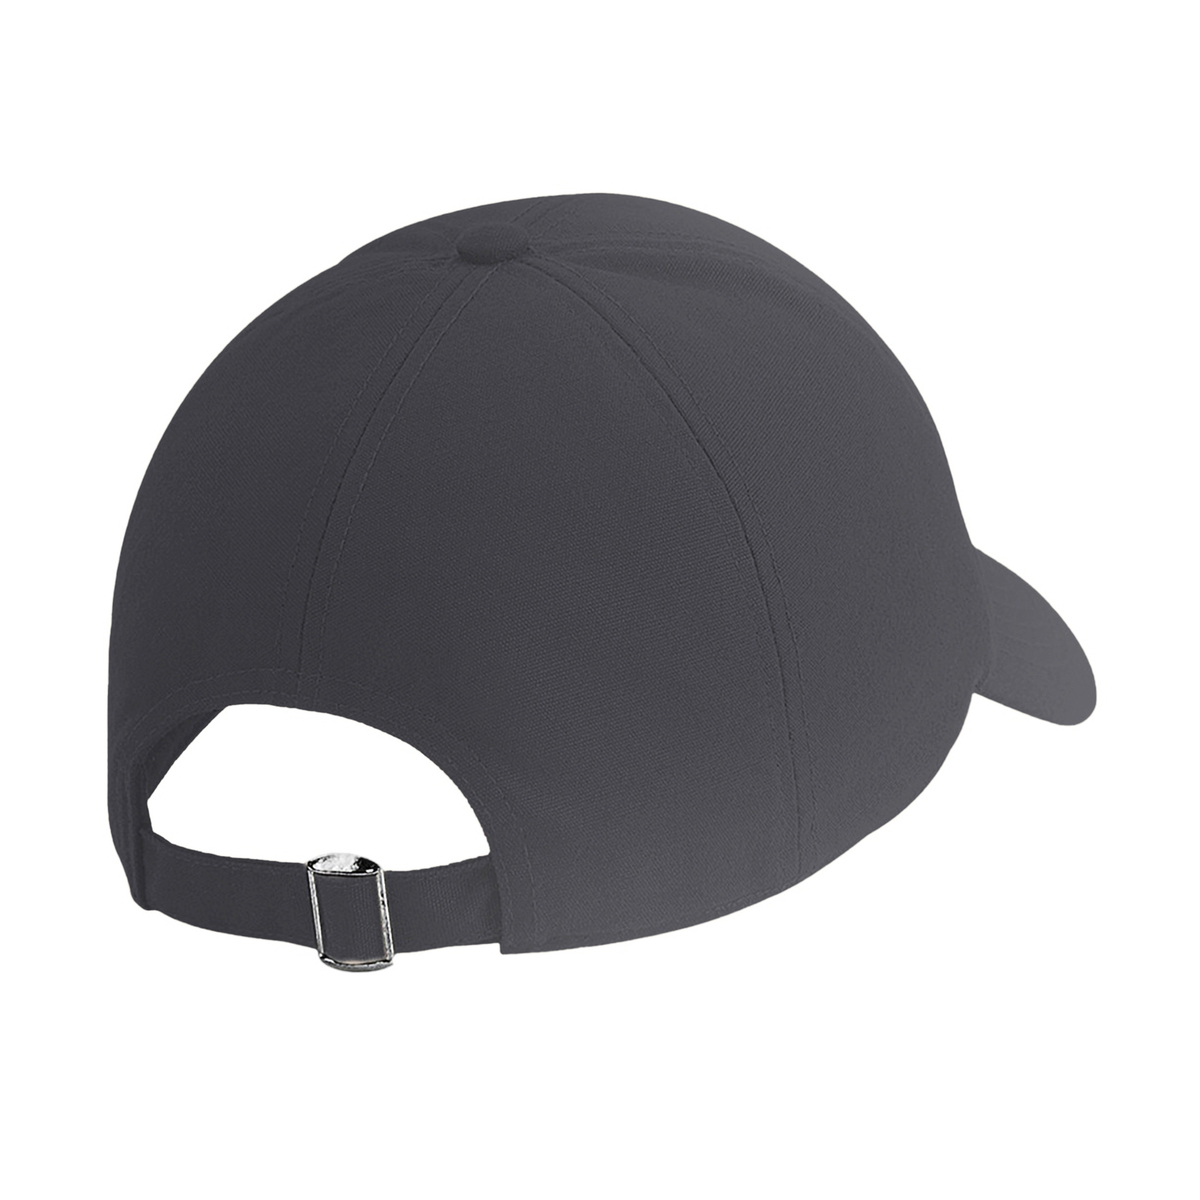 ビーチフィールド) Beechfield オーガニックコットン 6パネル キャップ ハット 帽子 メンズ帽子